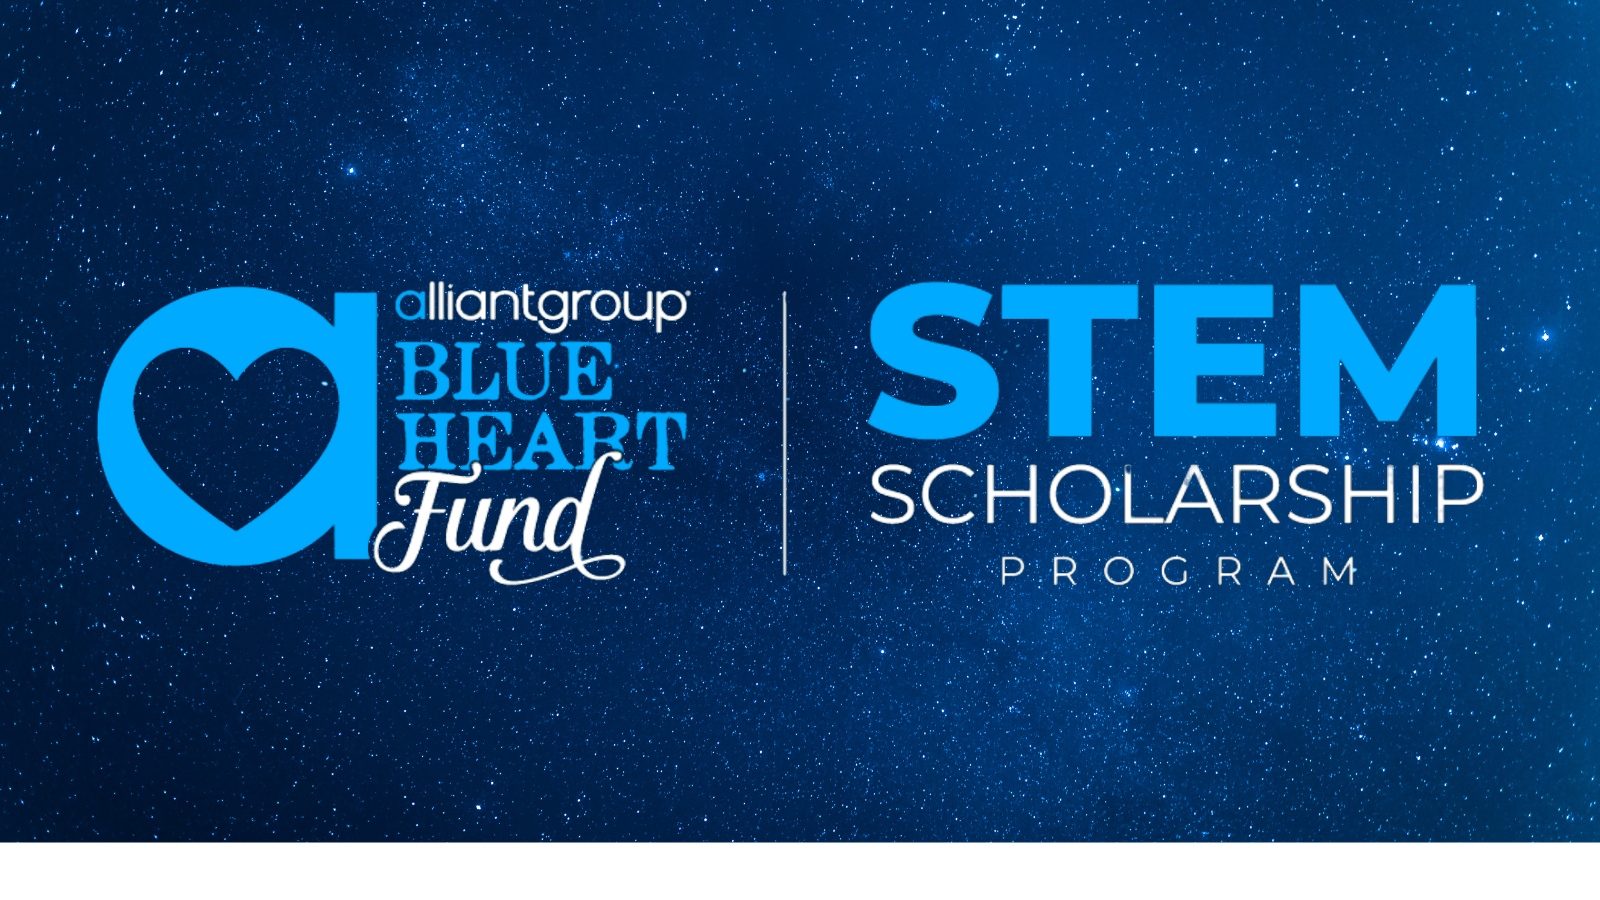  2021 alliantgroup STEM Scholarship Program